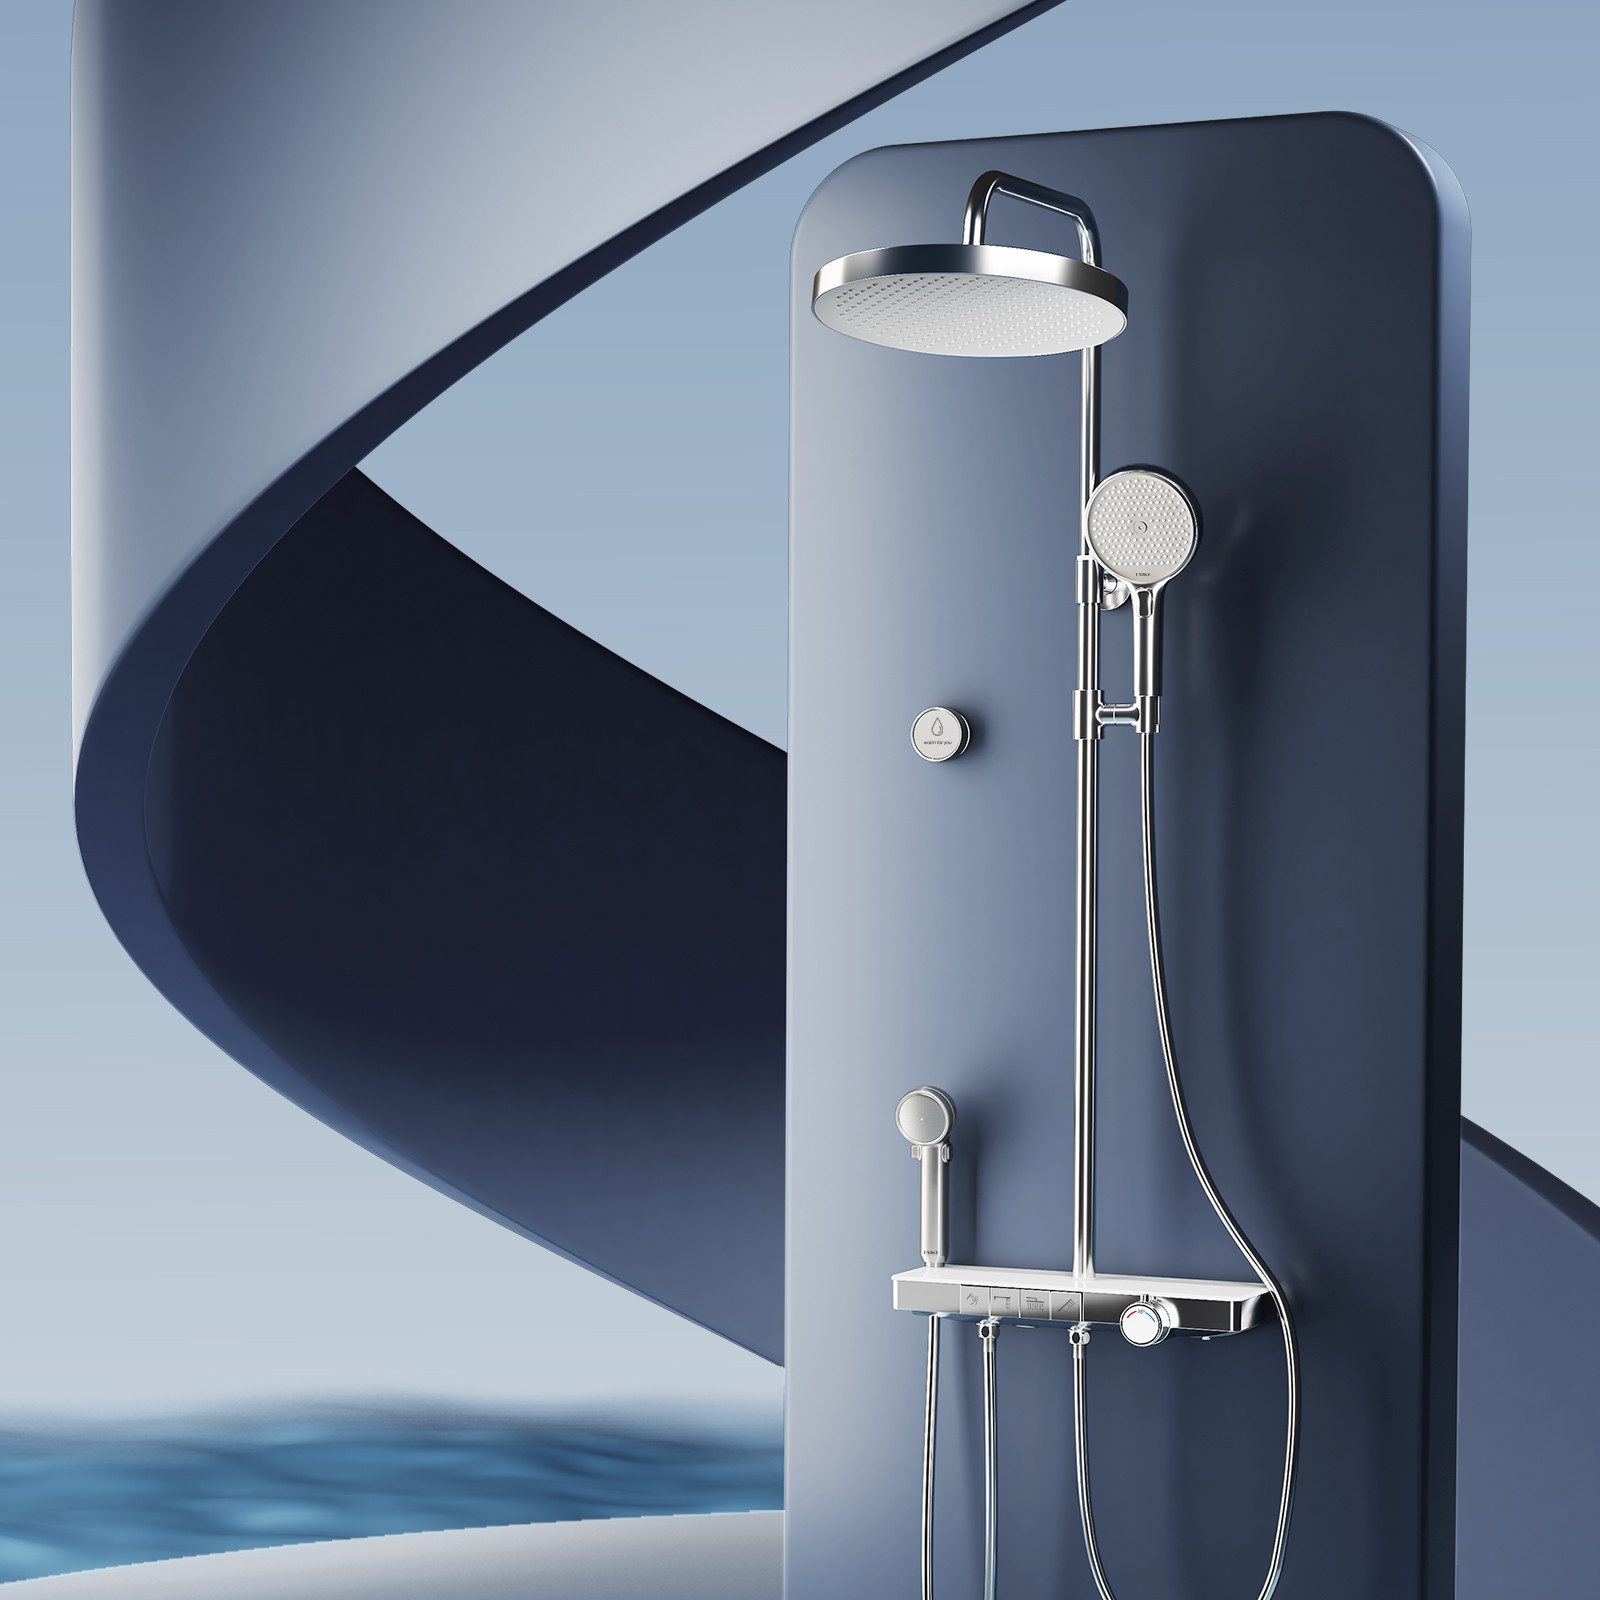 EMKE Duschsystem Brausegarnitur mit Thermostat Bluetooth-Steuerung Entwässerung, Höhe 113 cm, 4 Strahlart(en), Regenduische, Kinderdusche, Bluetooth, Chrom